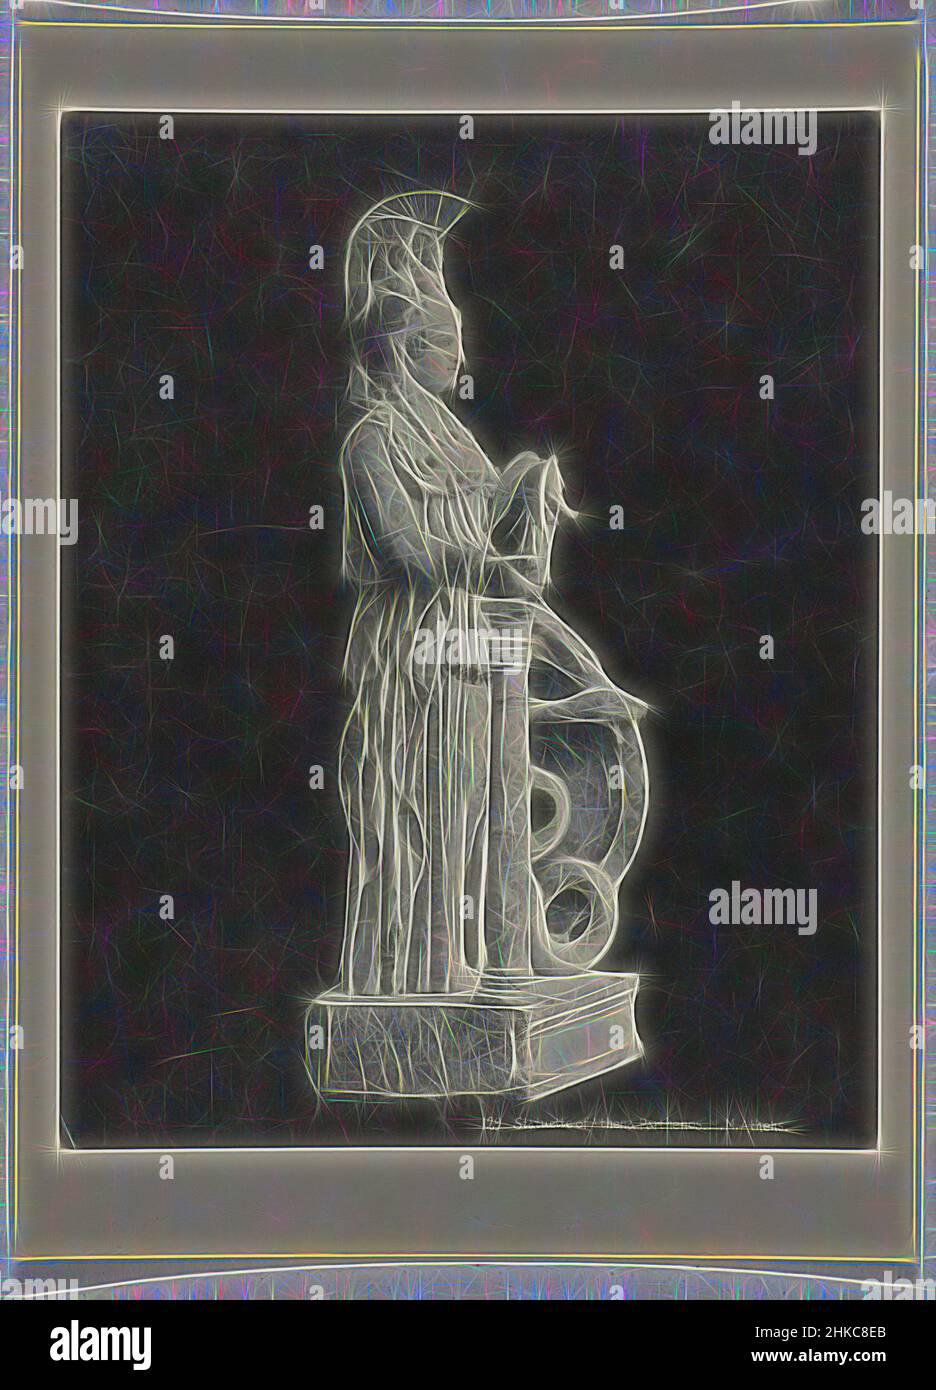 Inspiré par la statuette de Athene129 de la Statue de Pallas d'Athena Parthenos. N.M. Athènes., statue qui se trouvait au centre du Parthénon., Athene, c. 1895 - c. 1915, papier, collotype, hauteur 274 mm × largeur 216 mm hauteur 328 mm × largeur 239 mm, repensé par Artotop. L'art classique réinventé avec une touche moderne. Conception de lumière chaleureuse et gaie, de luminosité et de rayonnement de lumière. La photographie s'inspire du surréalisme et du futurisme, embrassant l'énergie dynamique de la technologie moderne, du mouvement, de la vitesse et révolutionne la culture Banque D'Images